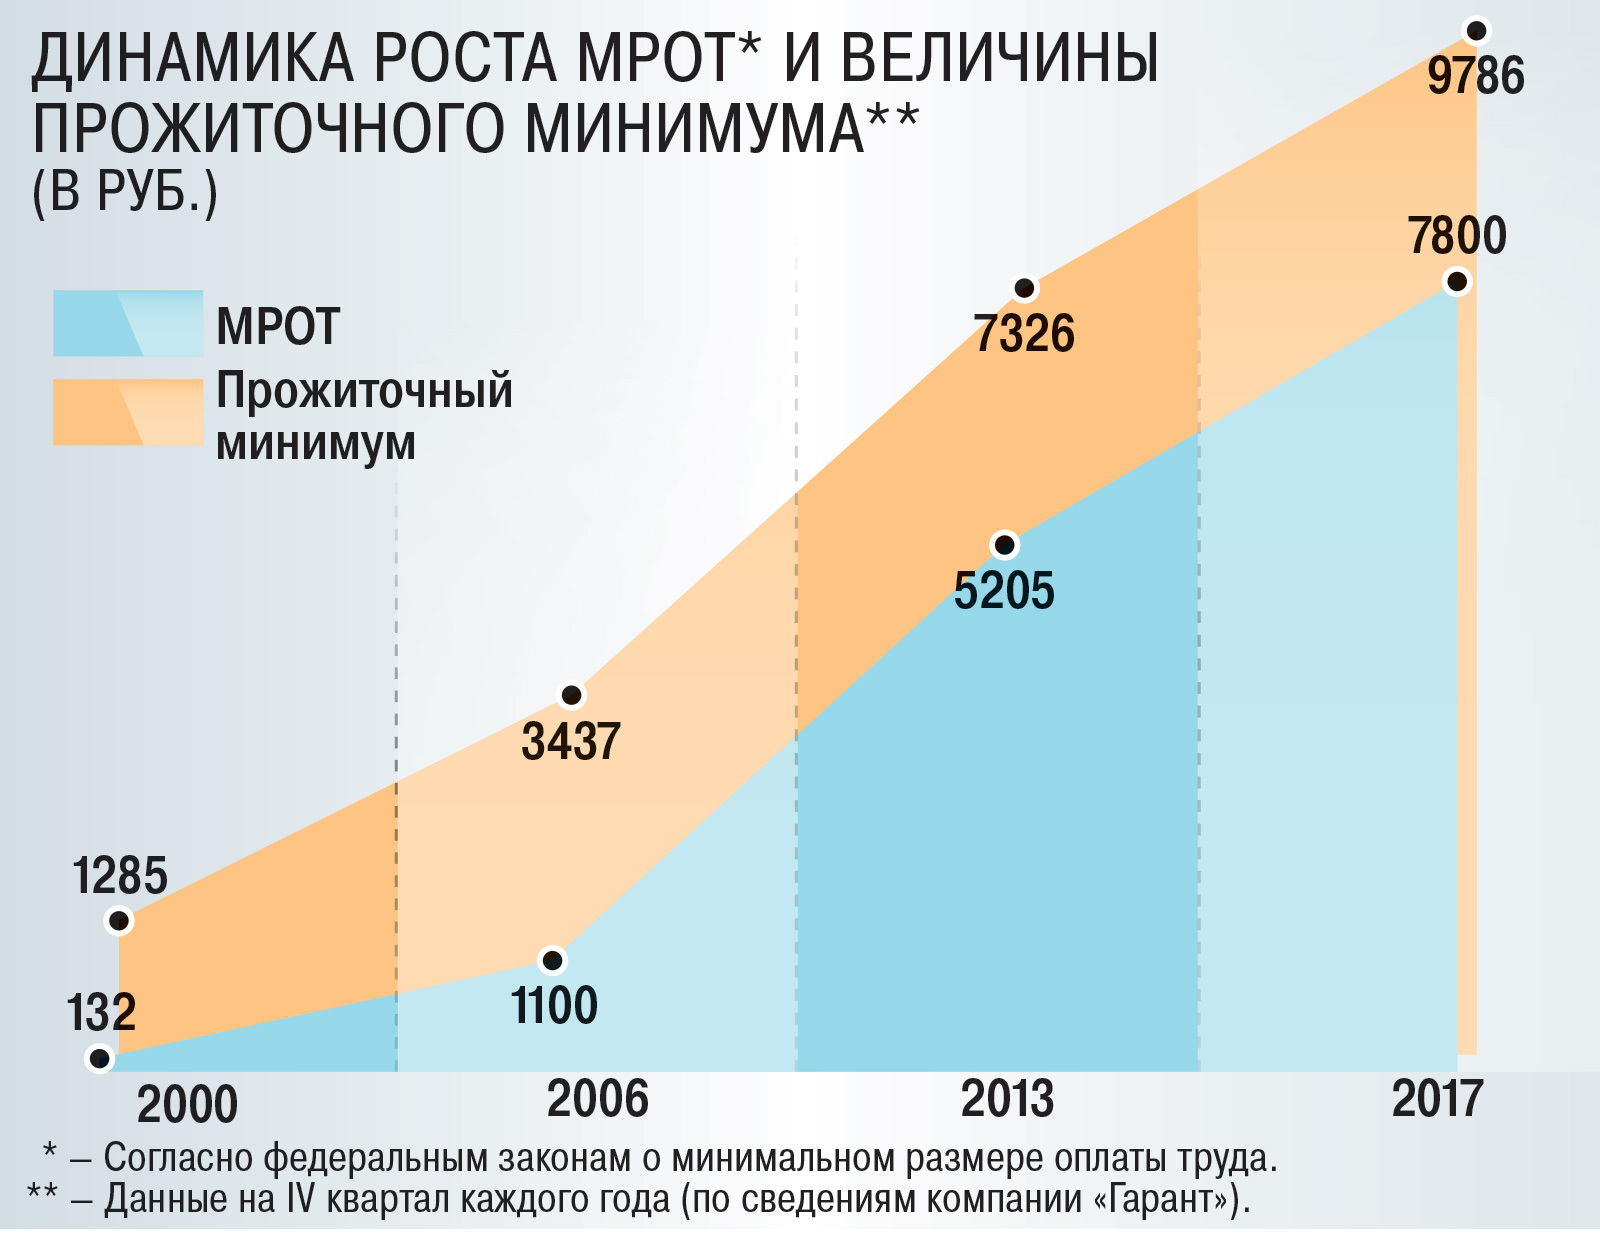 Коэффициент минимальной заработной платы. Рост прожиточного минимума в России. Динамика роста прожиточного минимума. МРОТ. МРОТ динамика по годам.